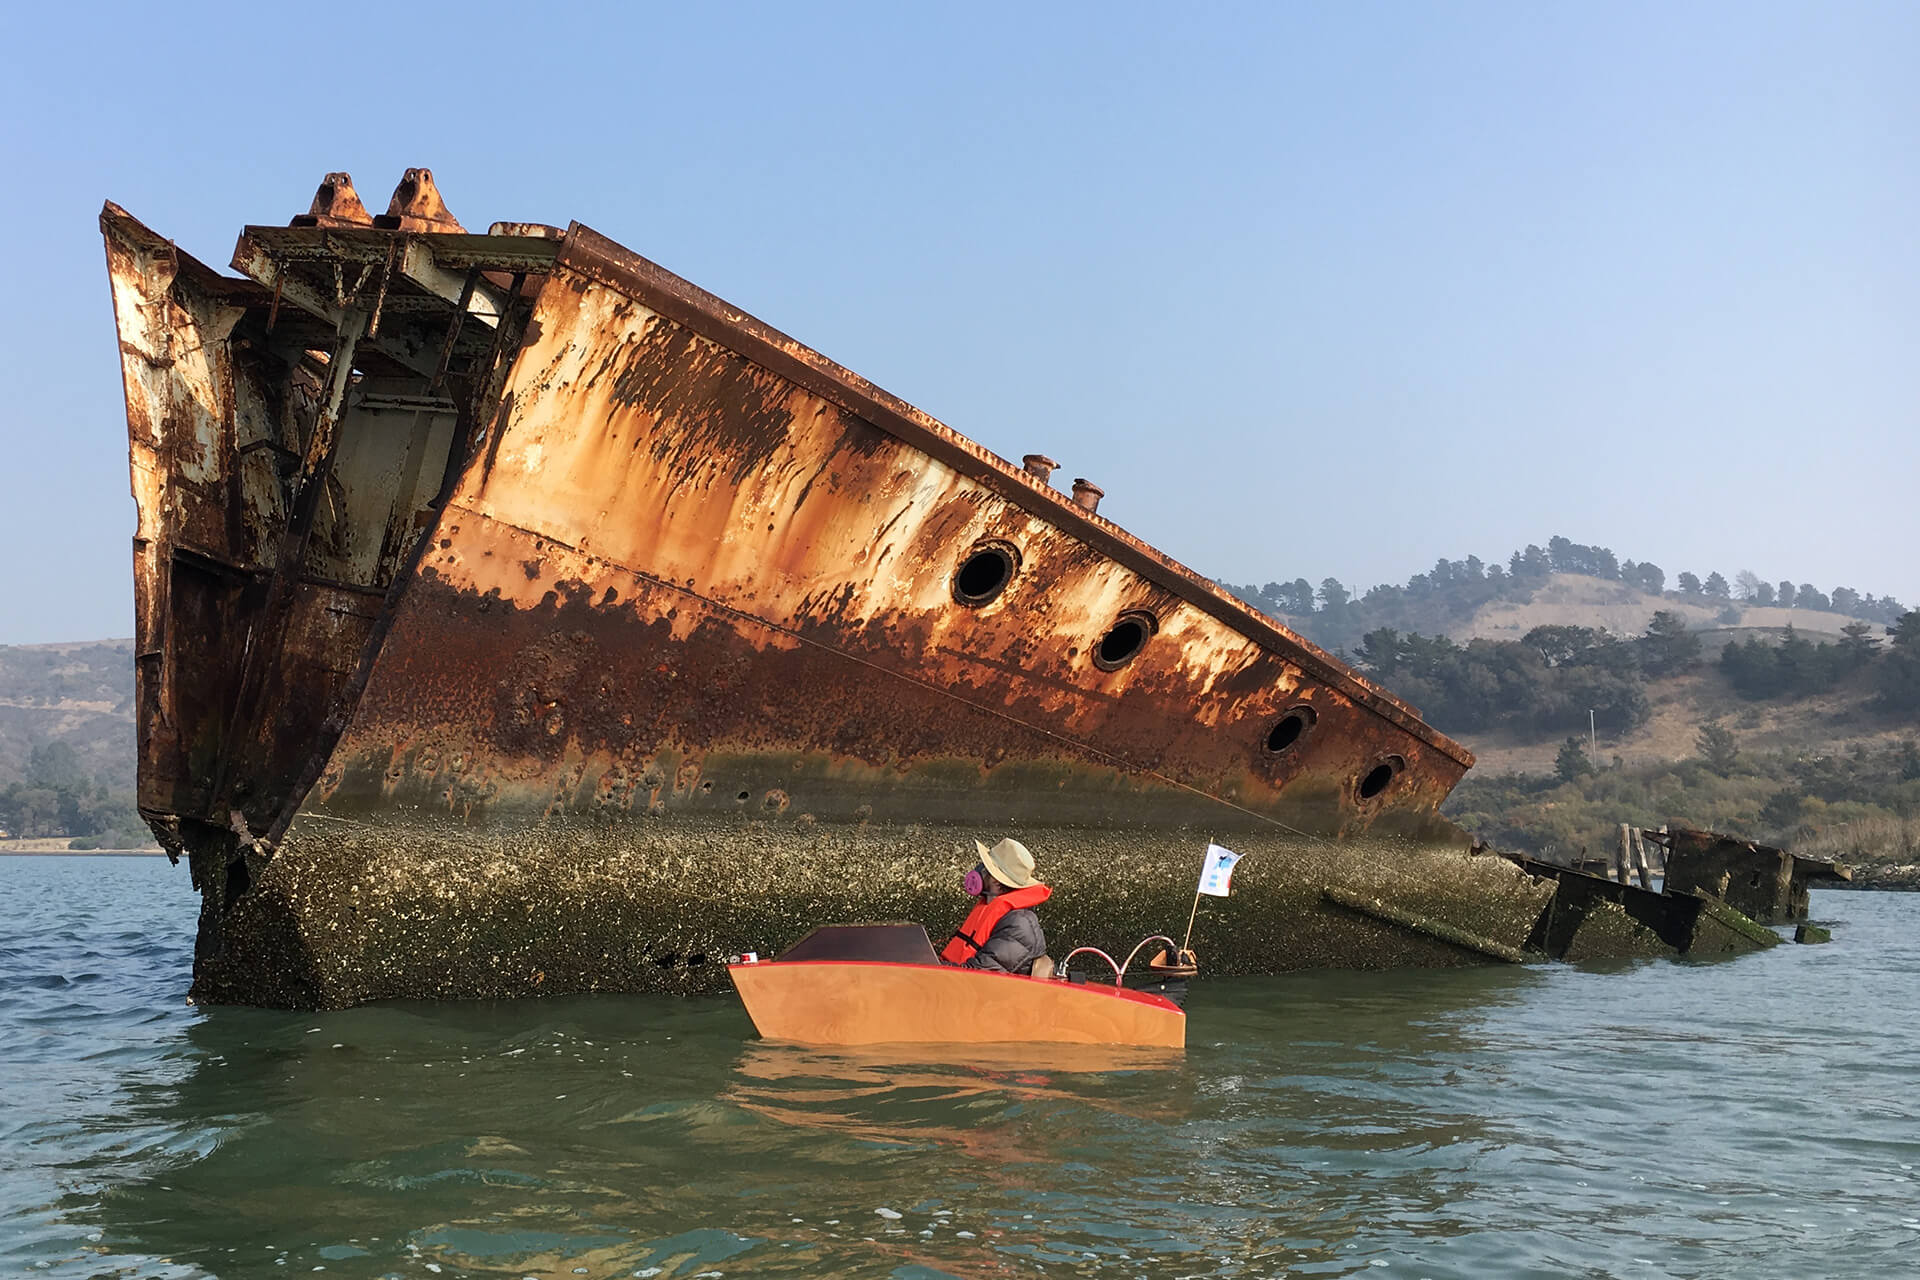 The mini boat next to a shipwreck in Richmond